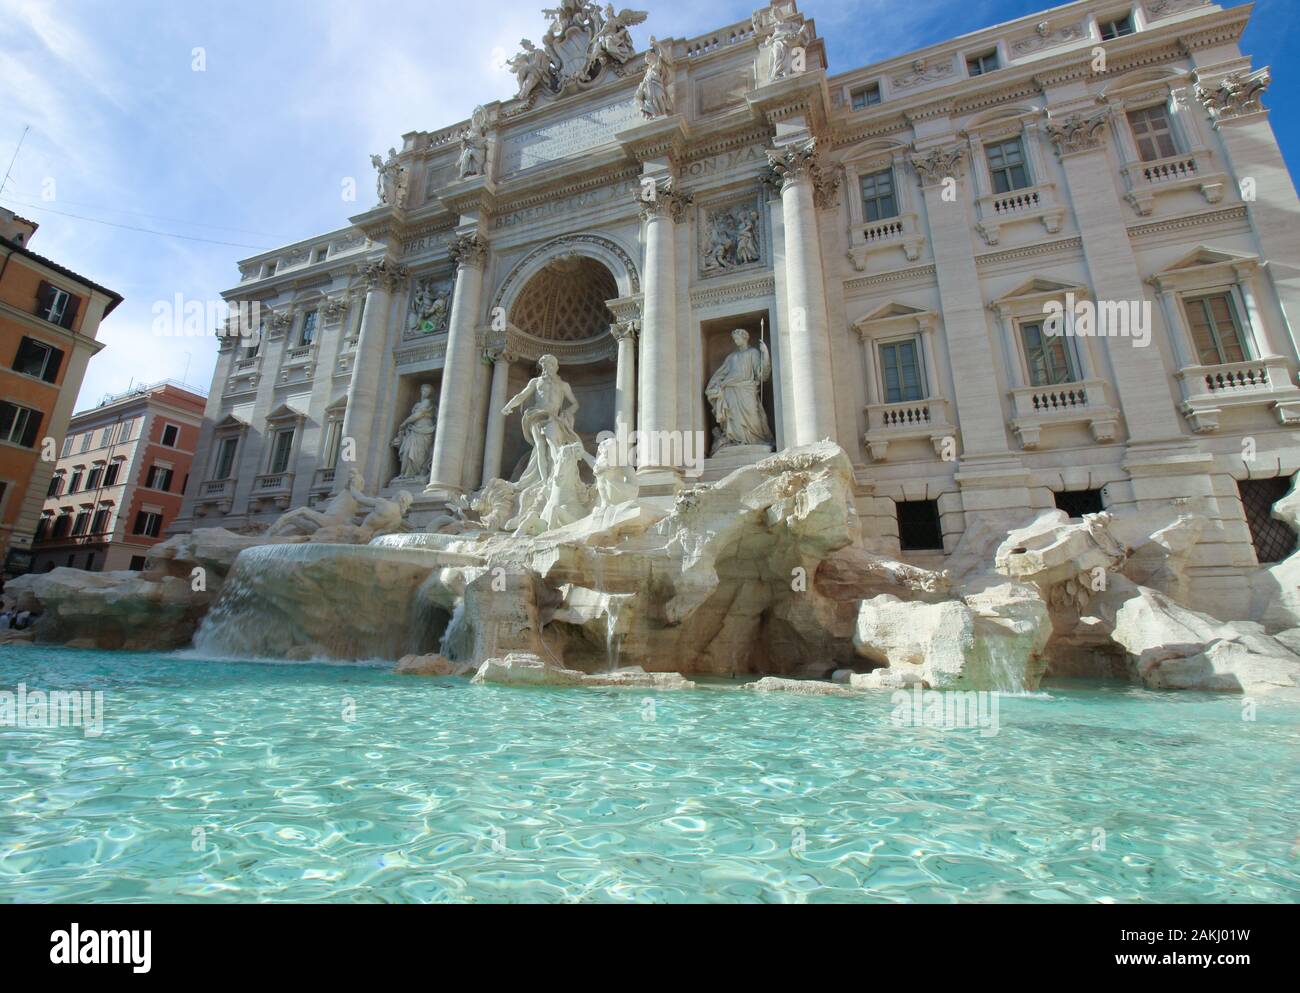 Vue panoramique sur la célèbre fontaine de Trevi à Rome, Italie Banque D'Images